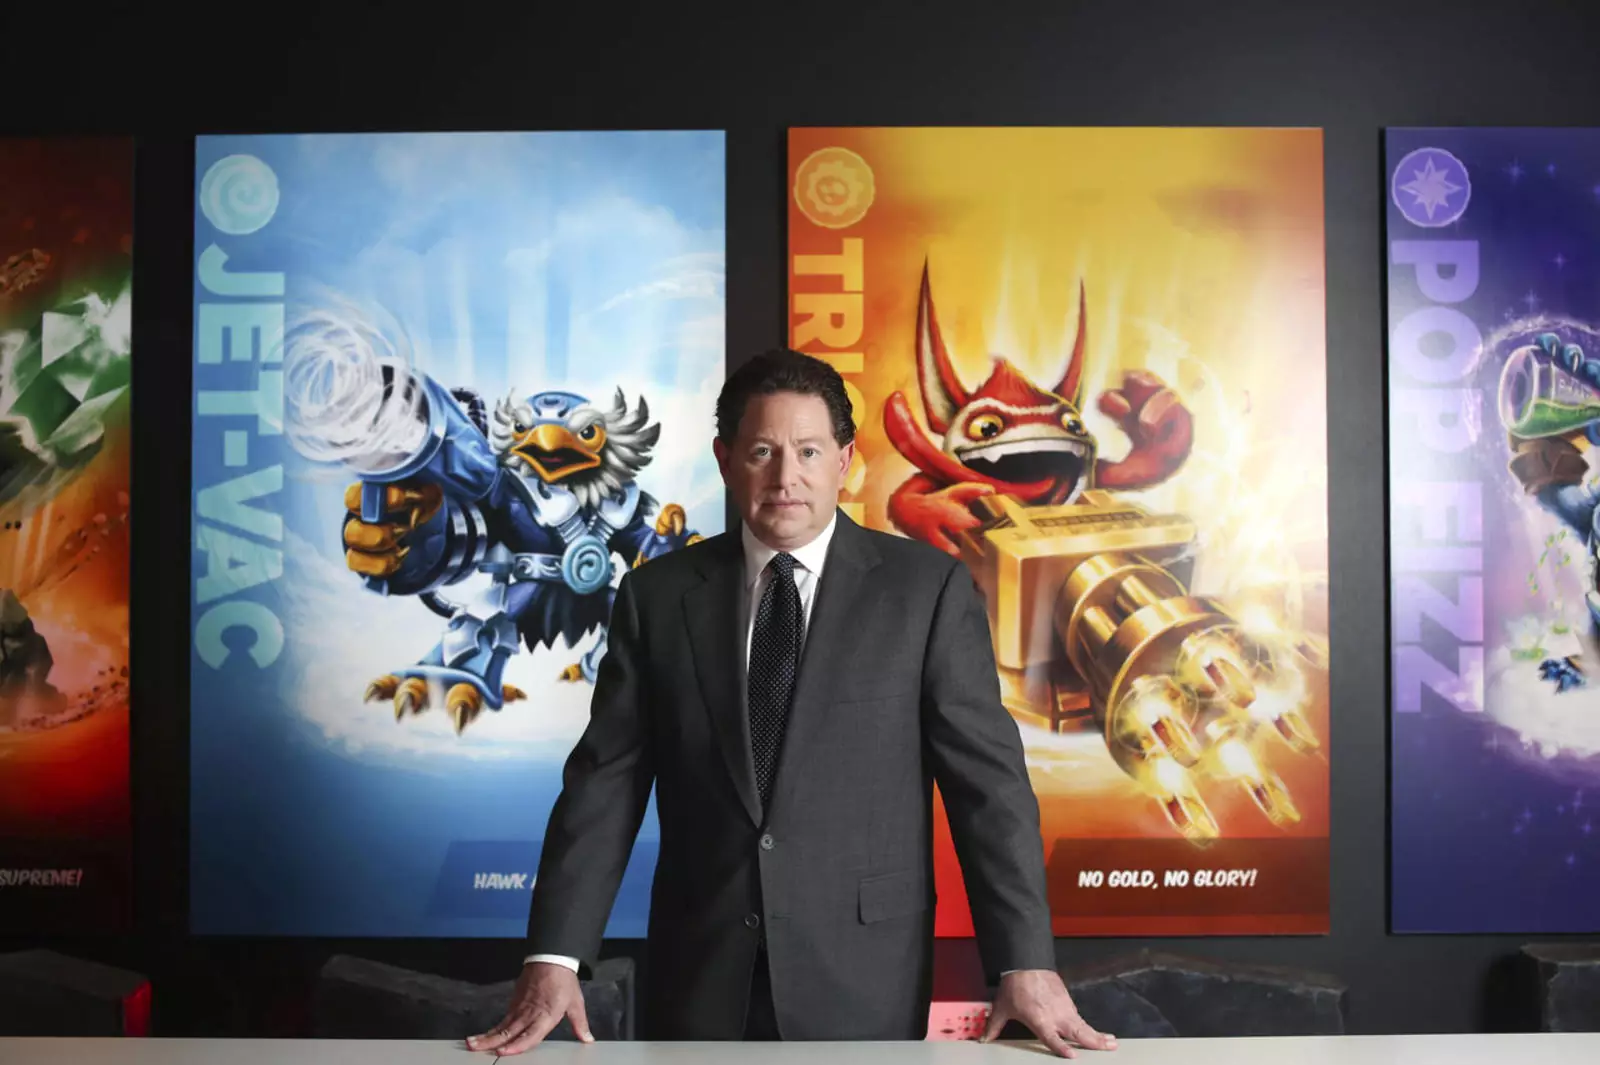 За период правления Бобби Котика культура разработки в Blizzard изменилась и пропиталась ненормальным стремлением к деньгам, а не идеям и инновациям.